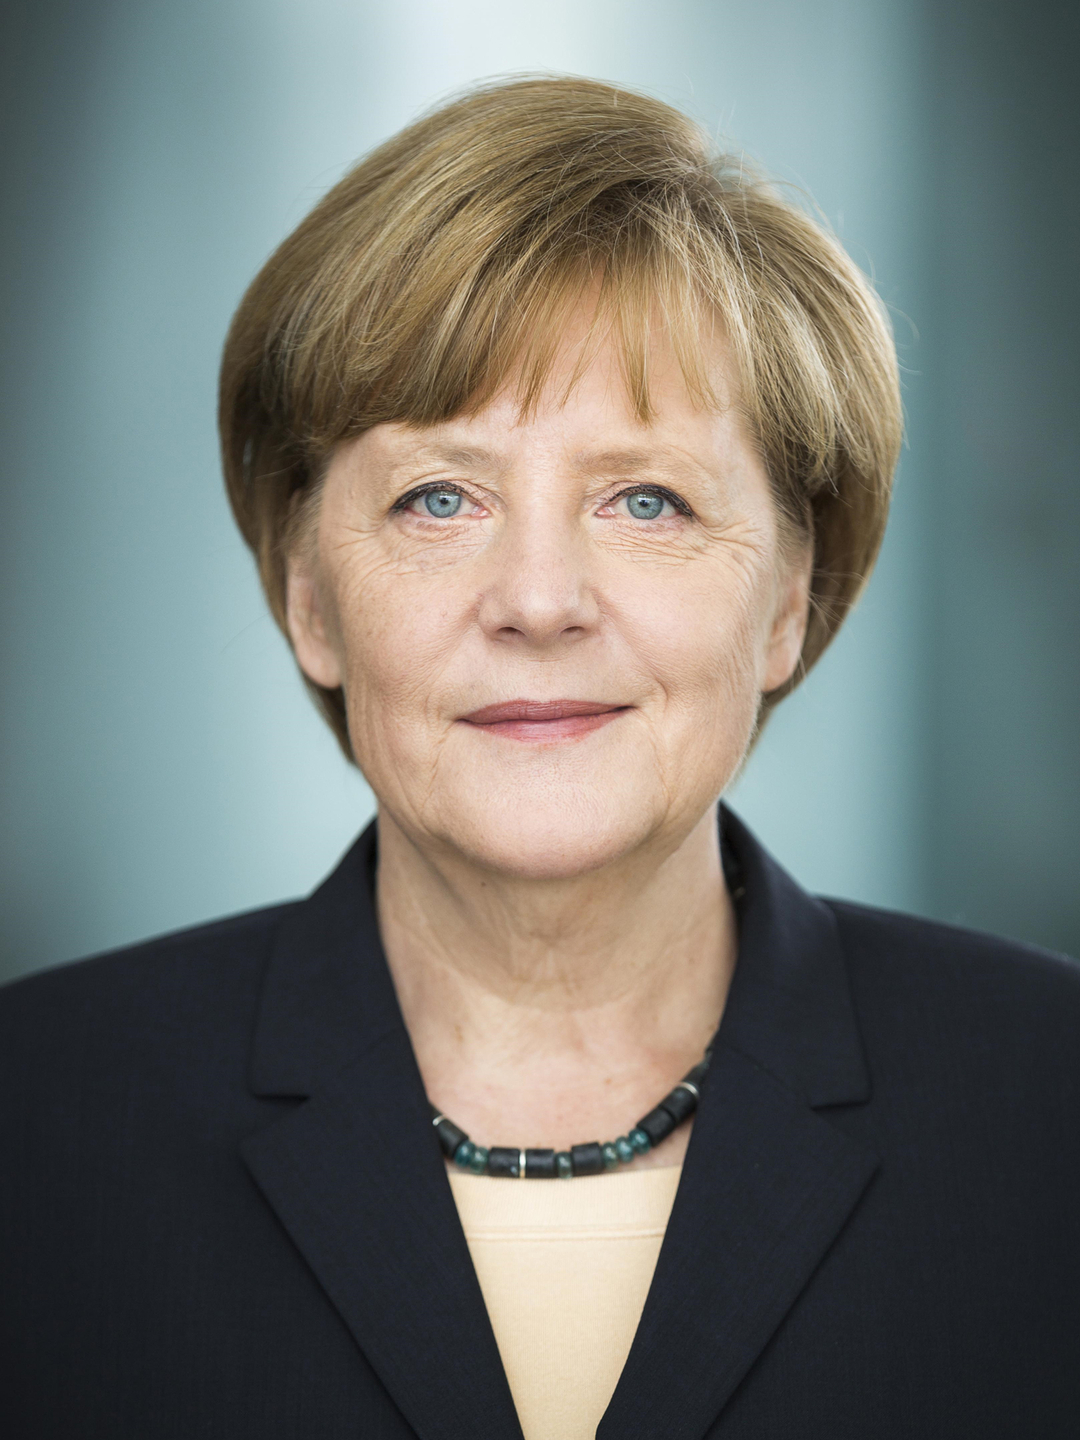 Angela Merkel height and weight